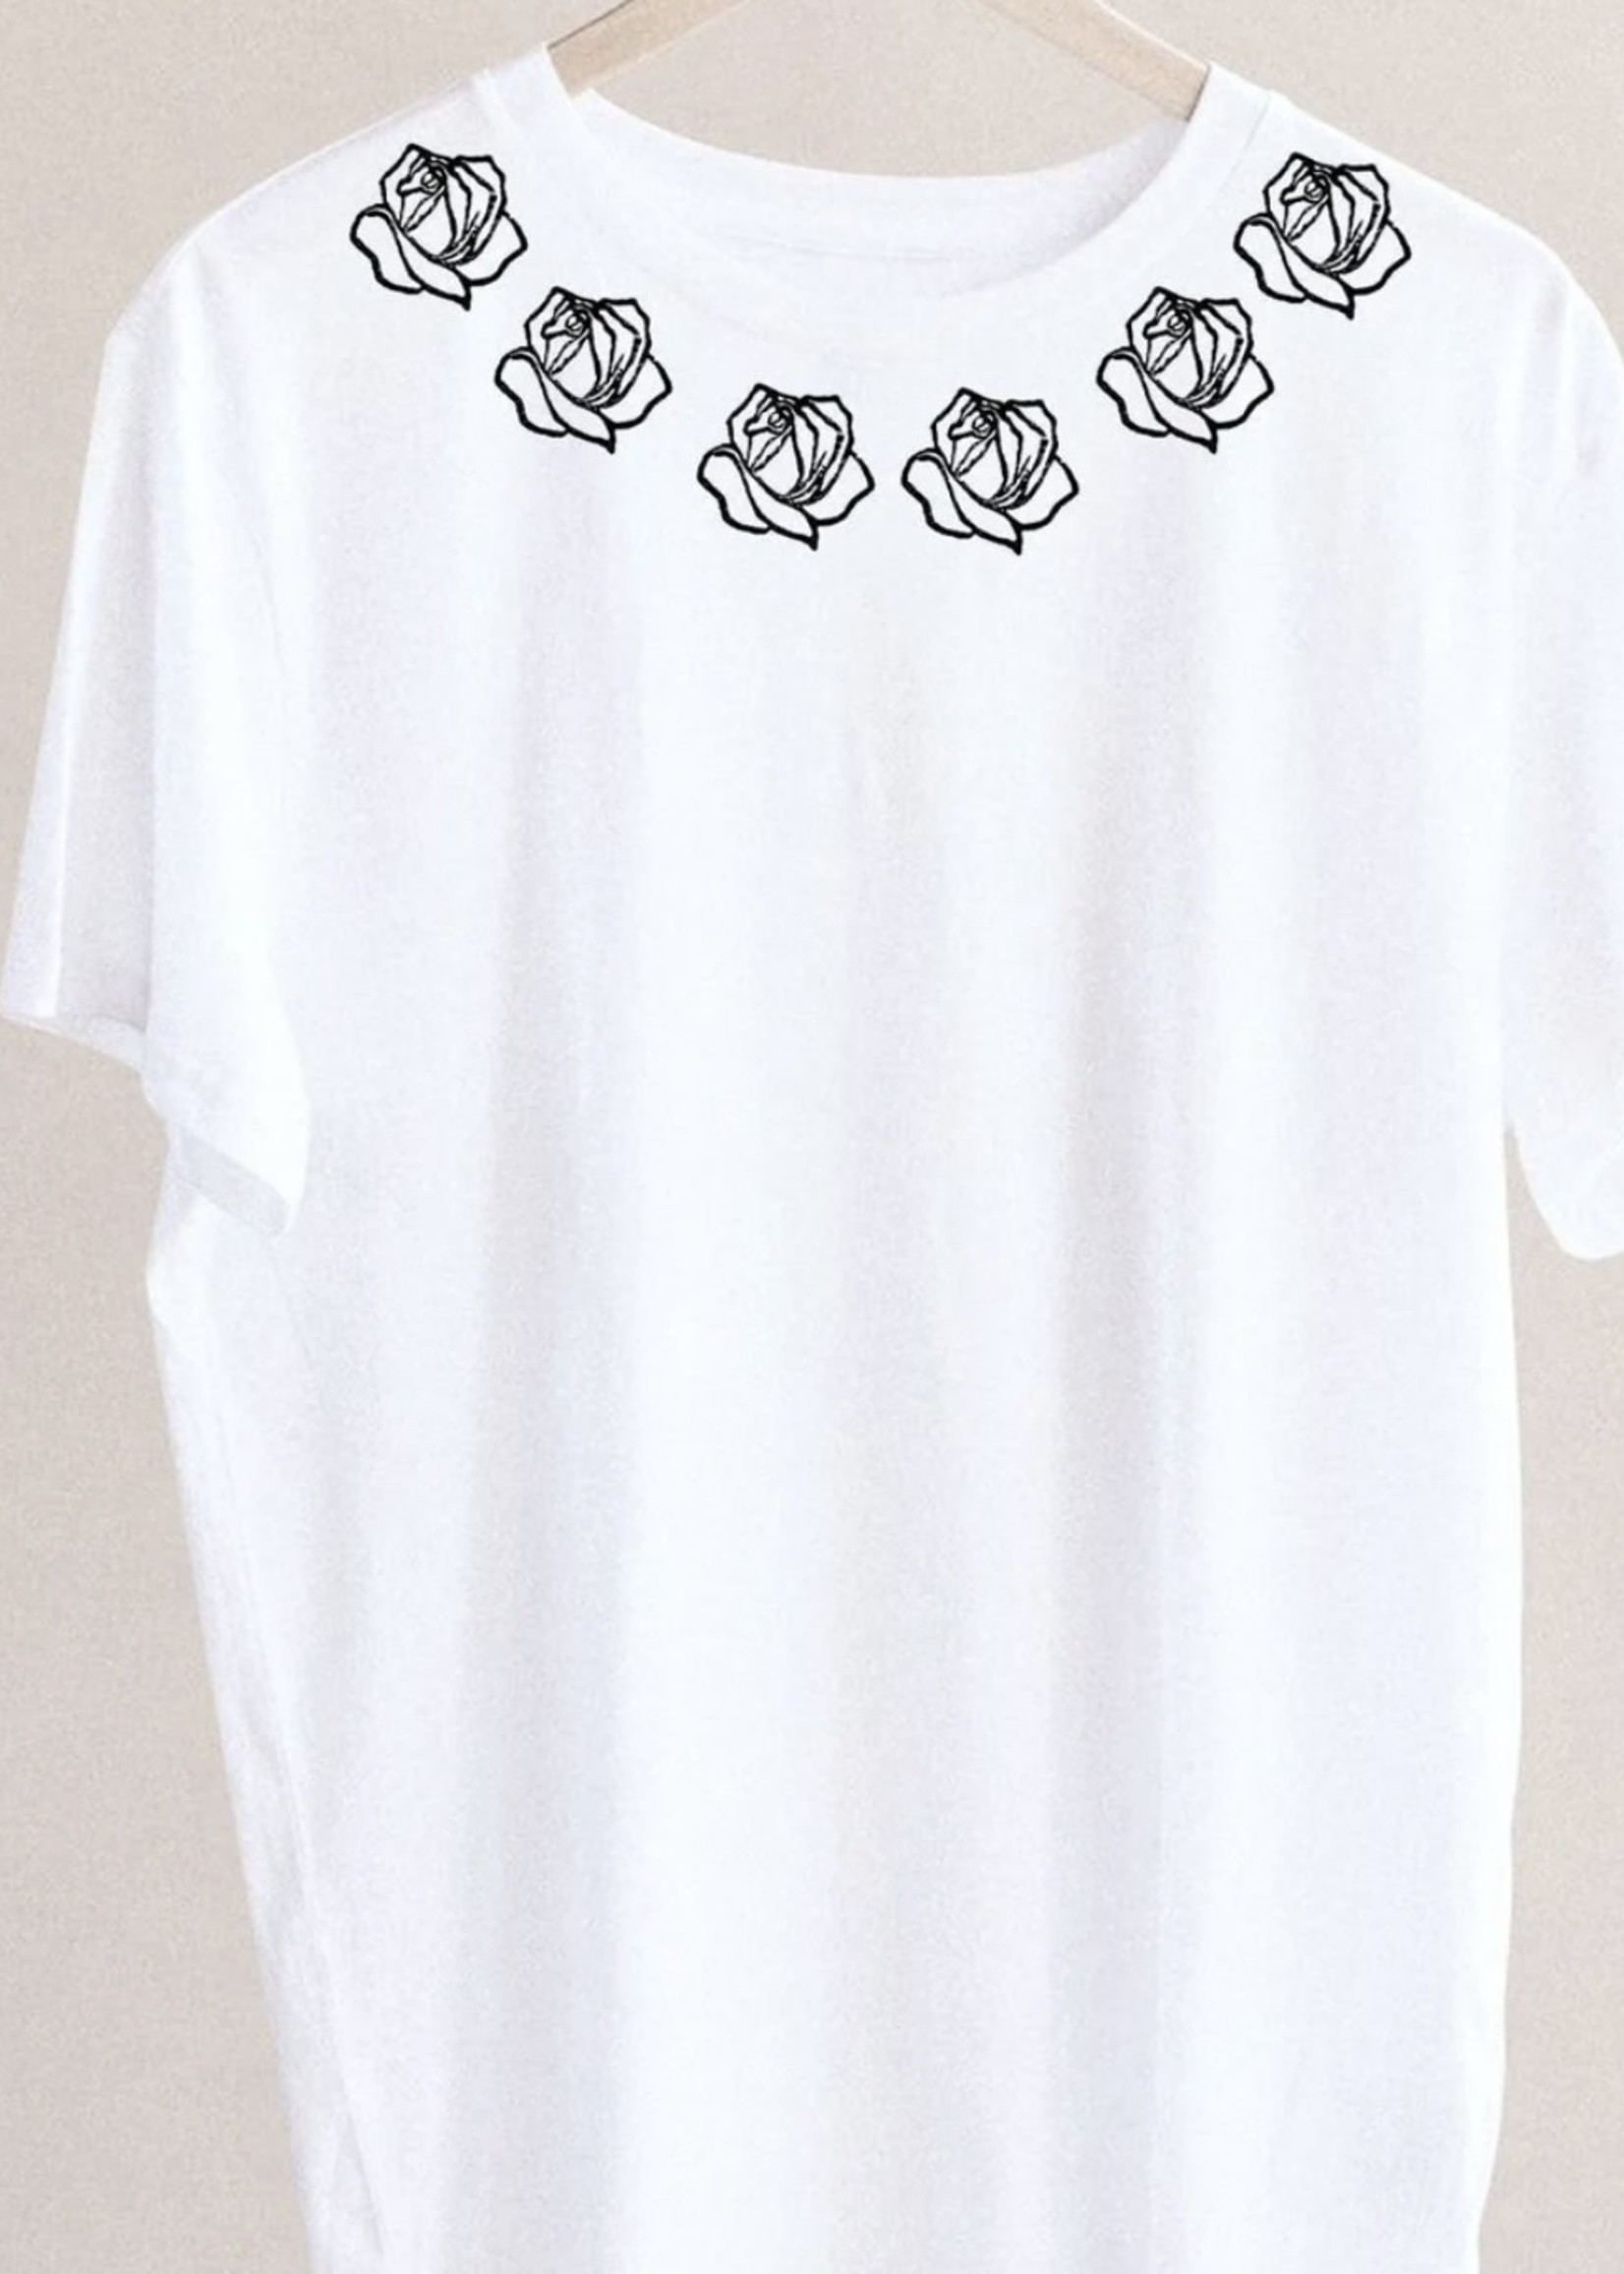 M.E. image T-shirt Roses au col